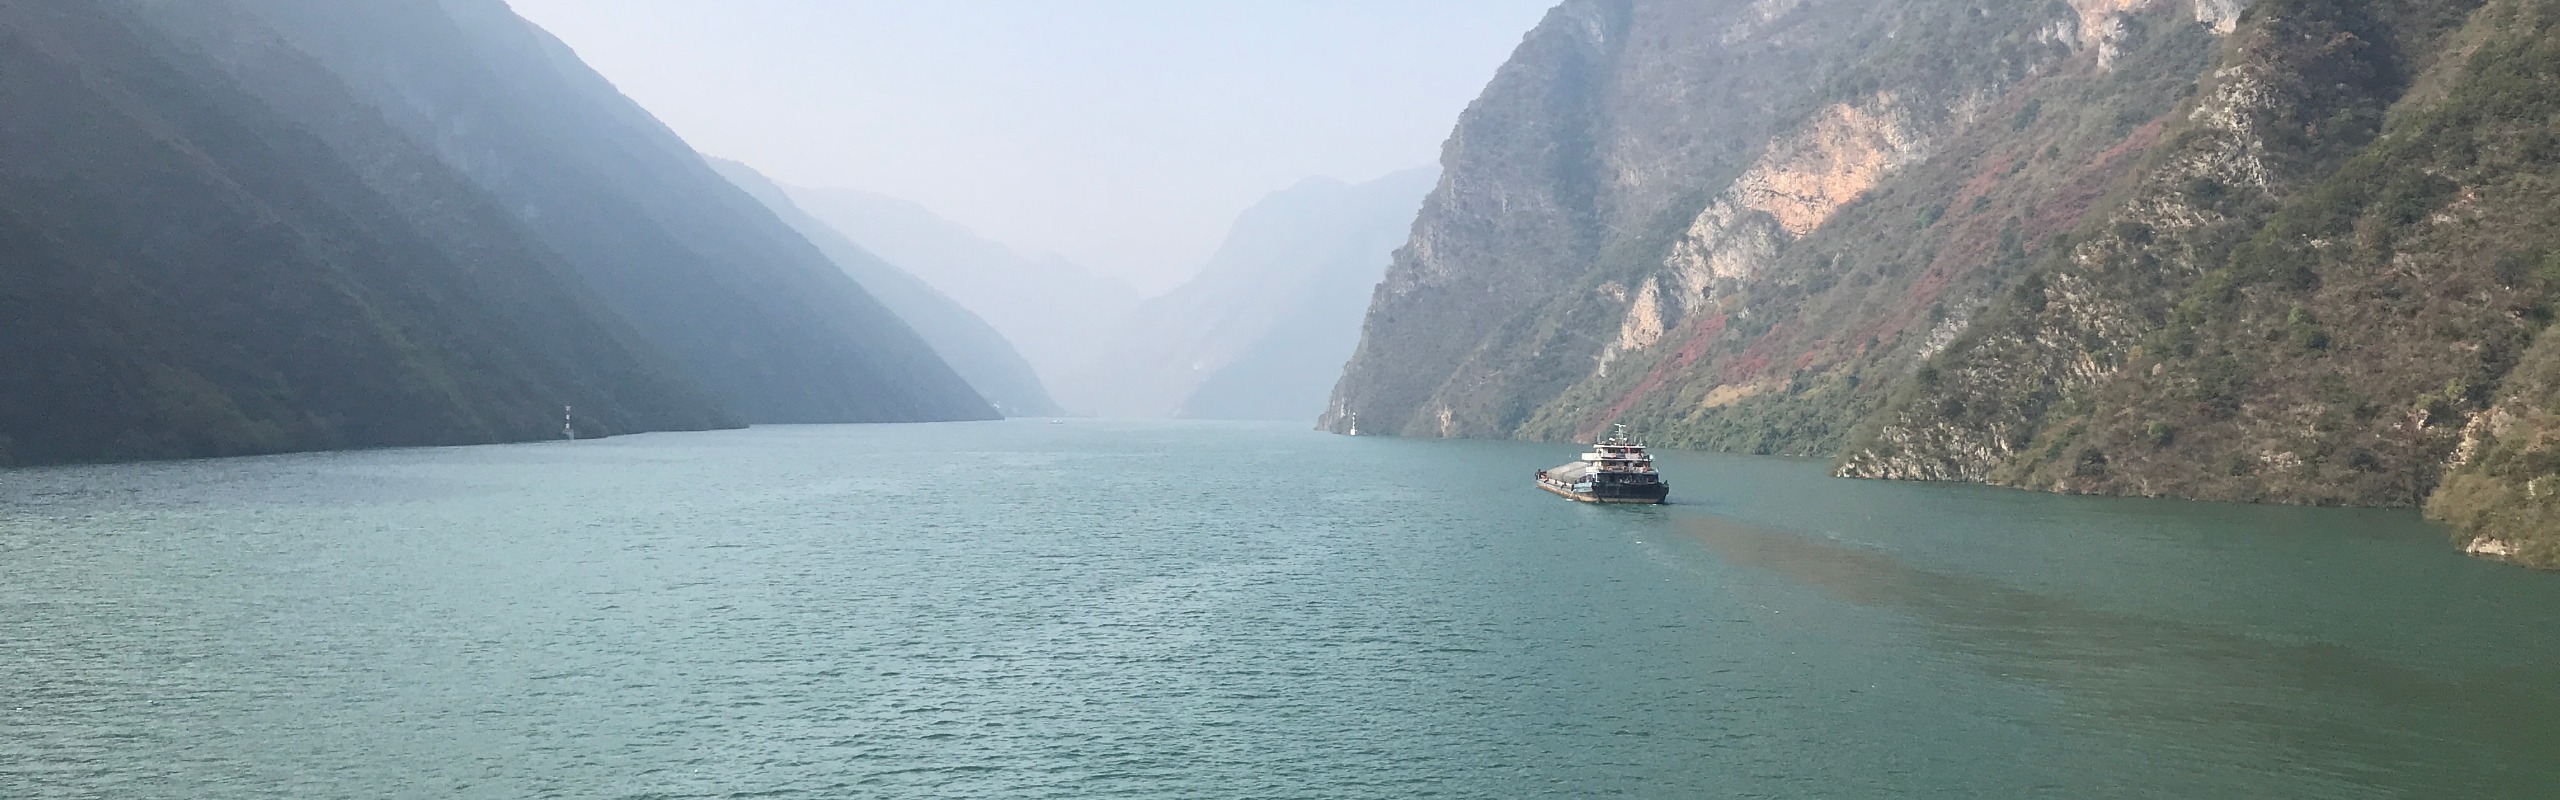 15 Days Chengdu Yangtze River Zhangjiajie Xian and Beijing Tour